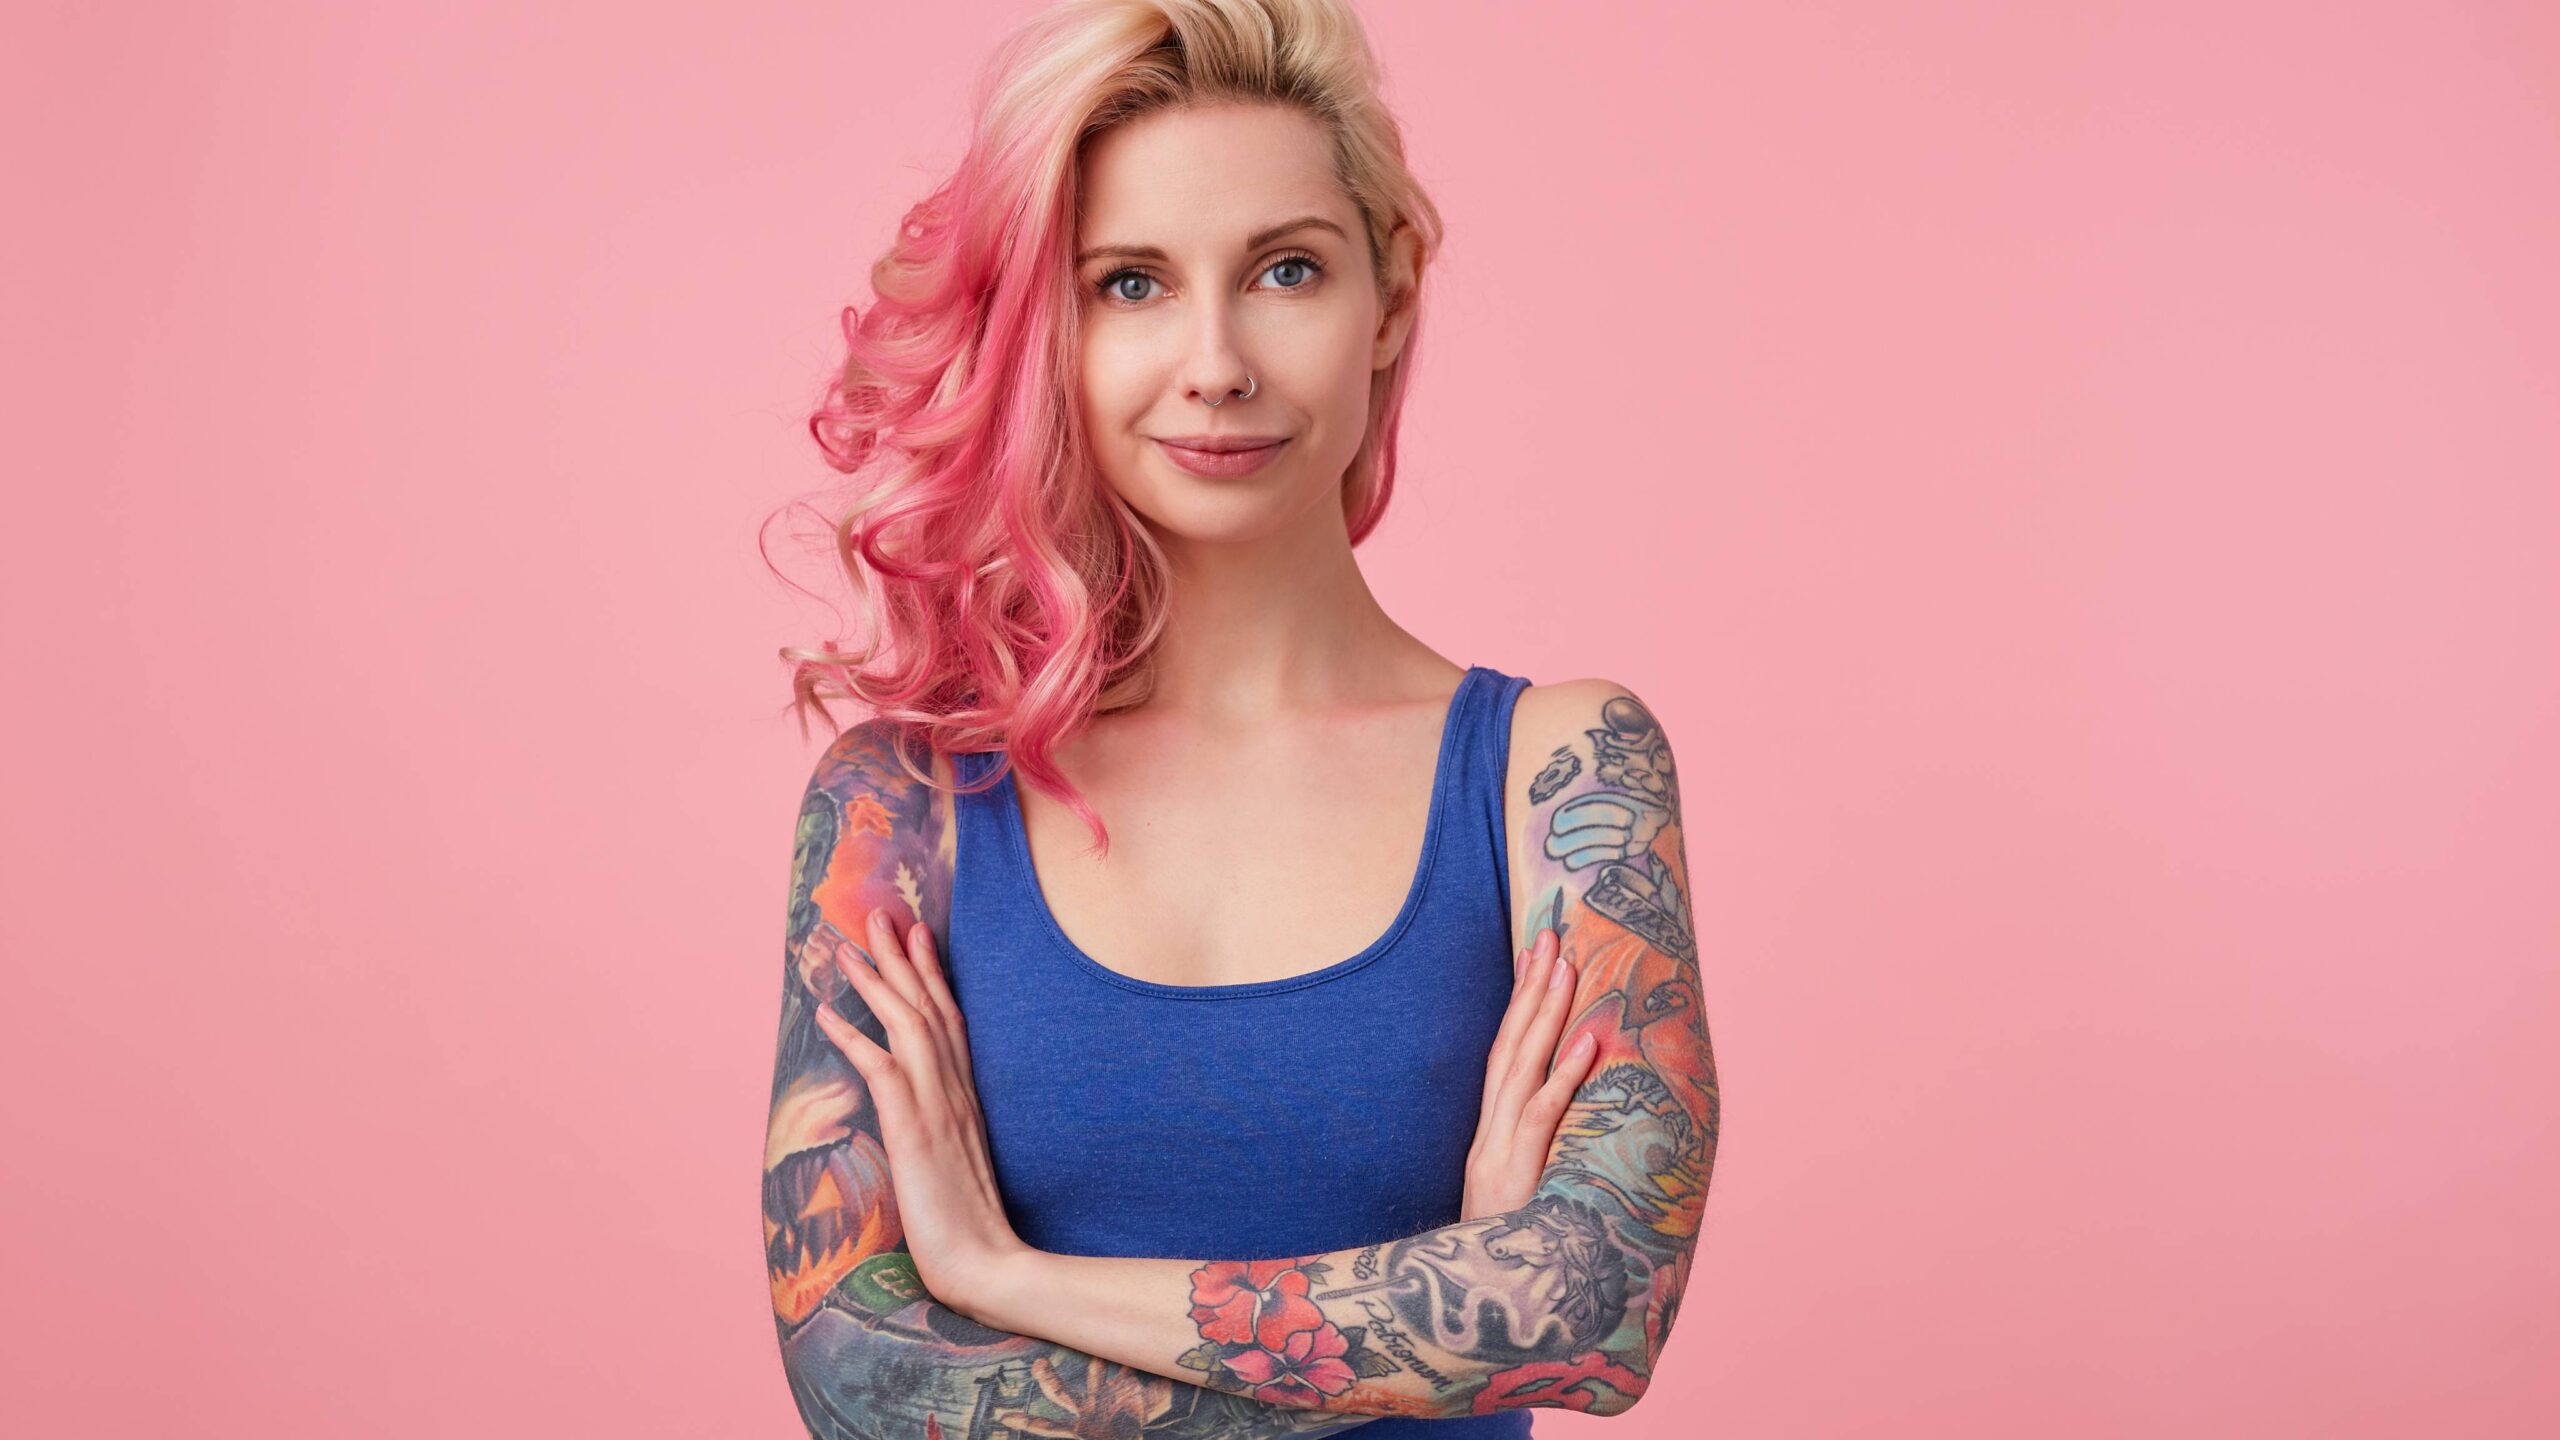 Mulher jovem com braços tatuados cruzados, regata azul e cabelo loiro com mechas rosas em fundo rosa